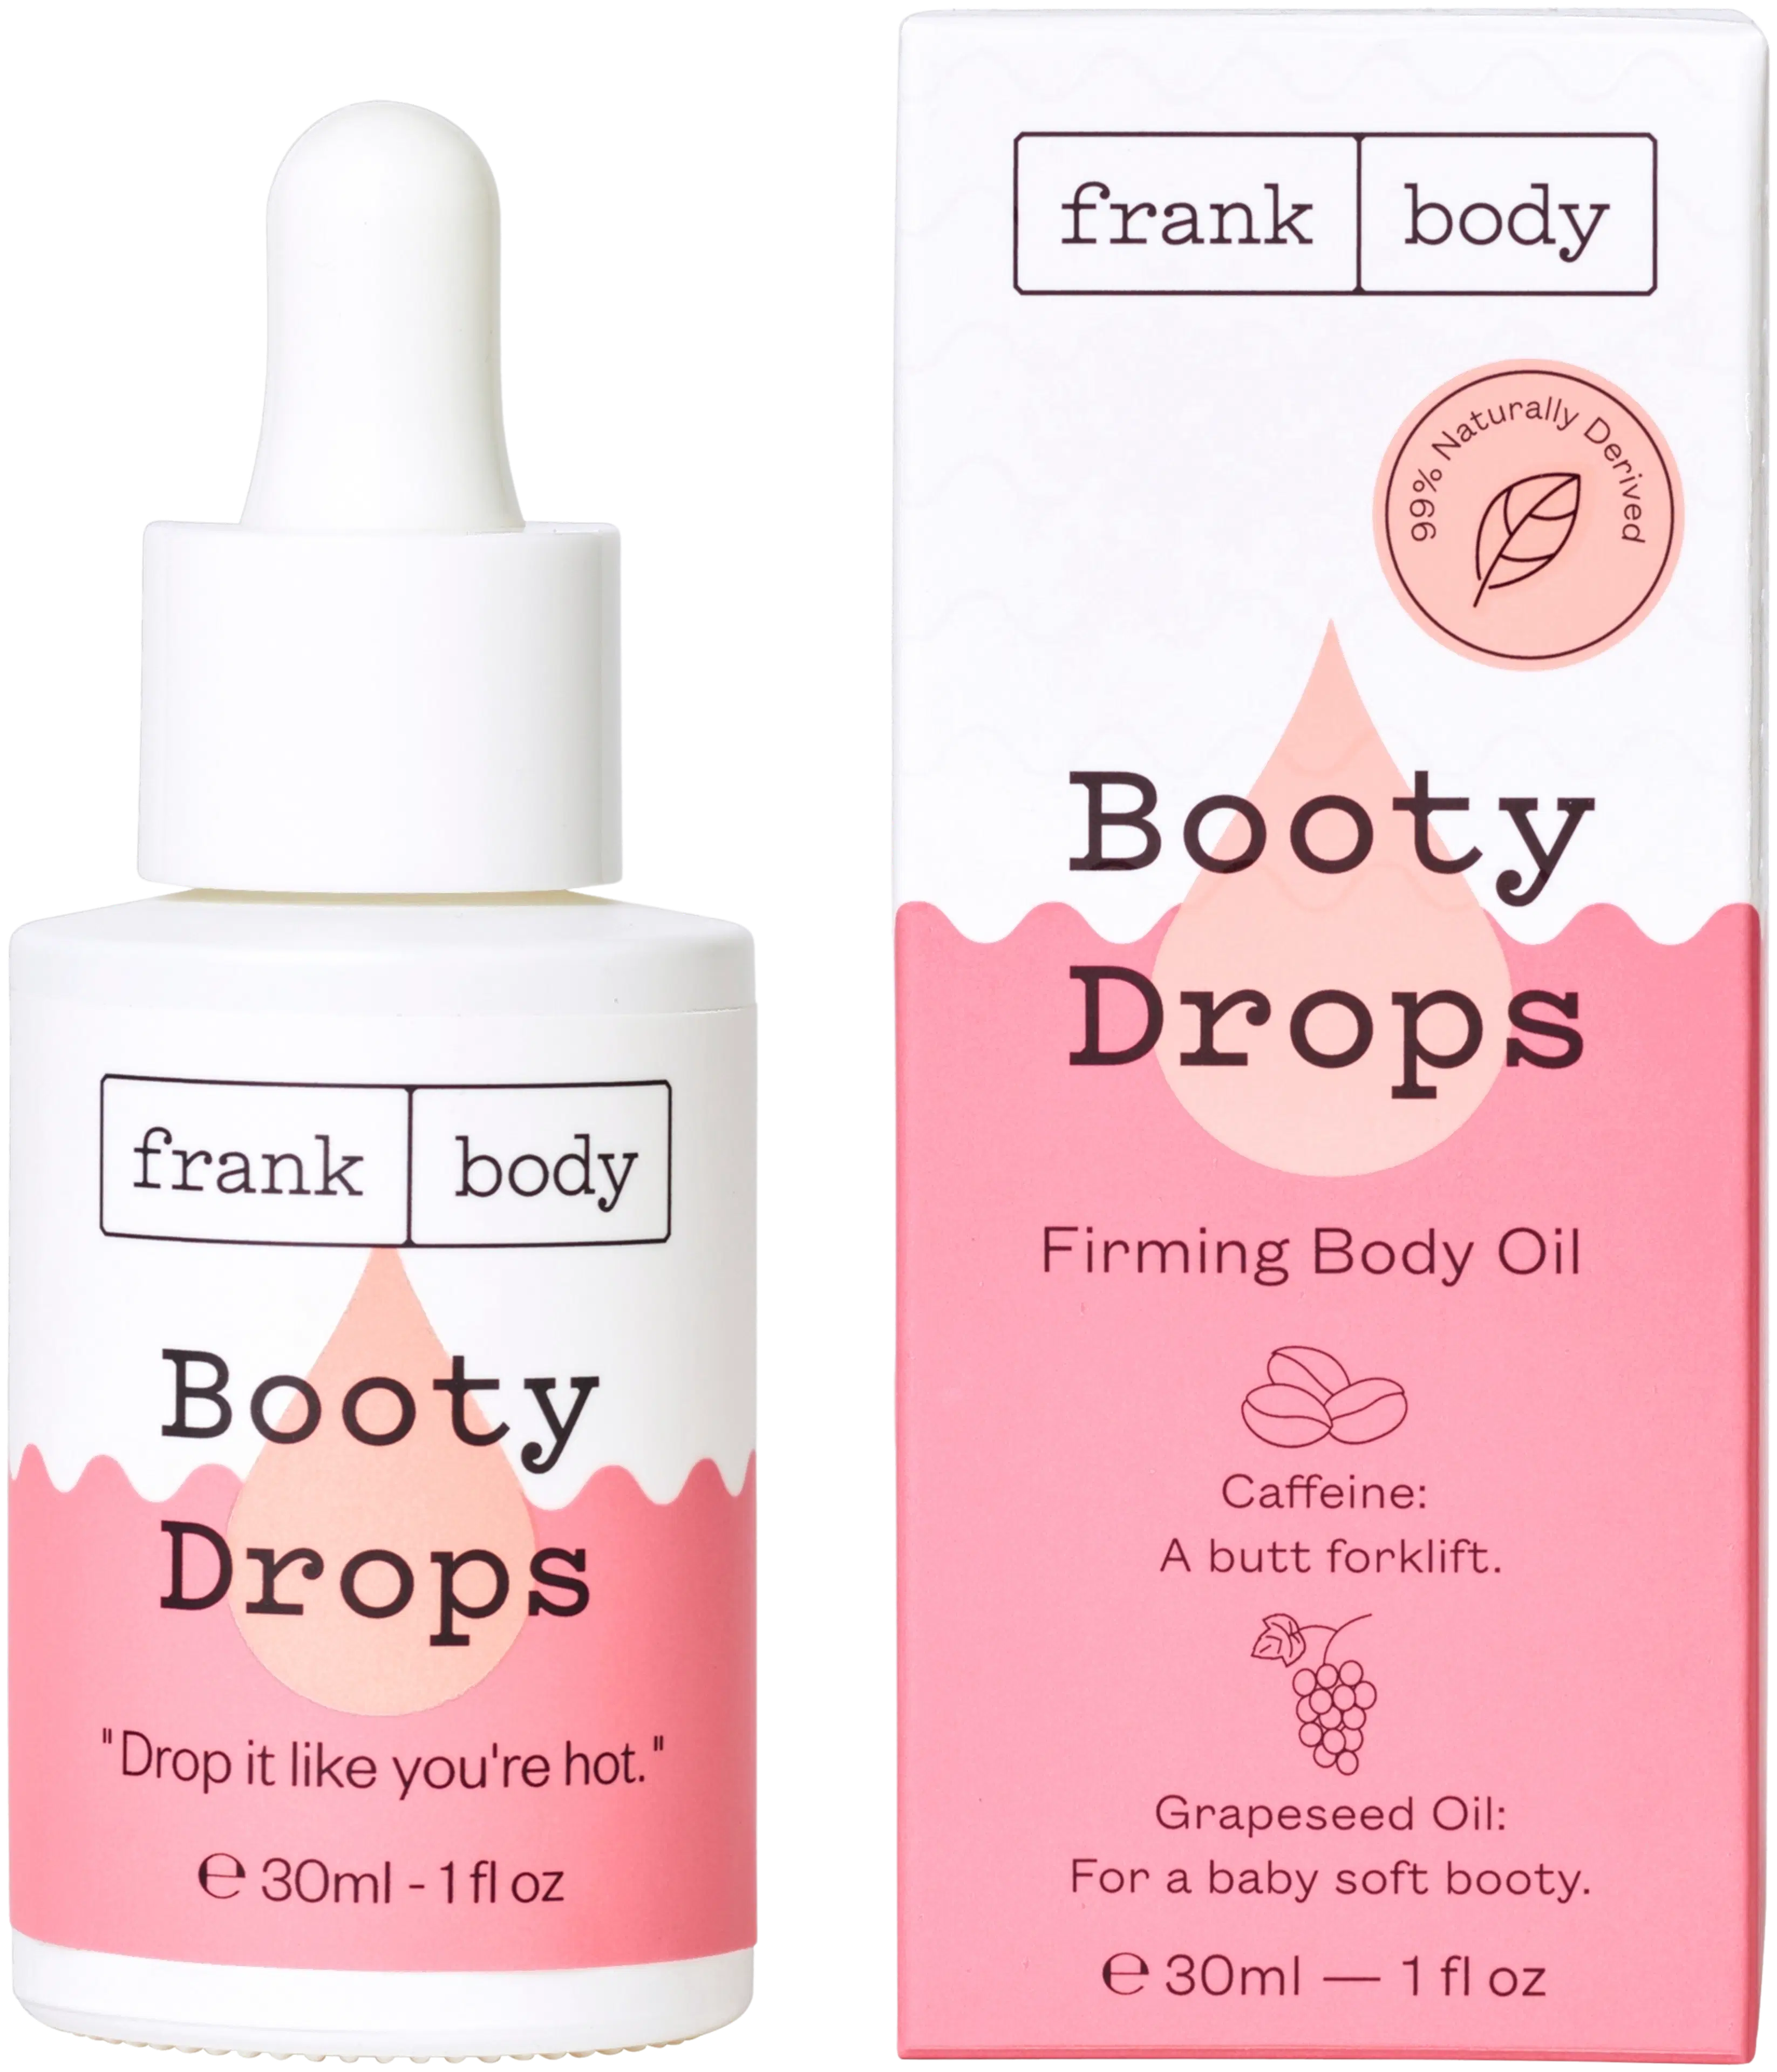 Frank Body Booty Drops Firming Body Oil kiinteyttävä vartaloöljy 30ml